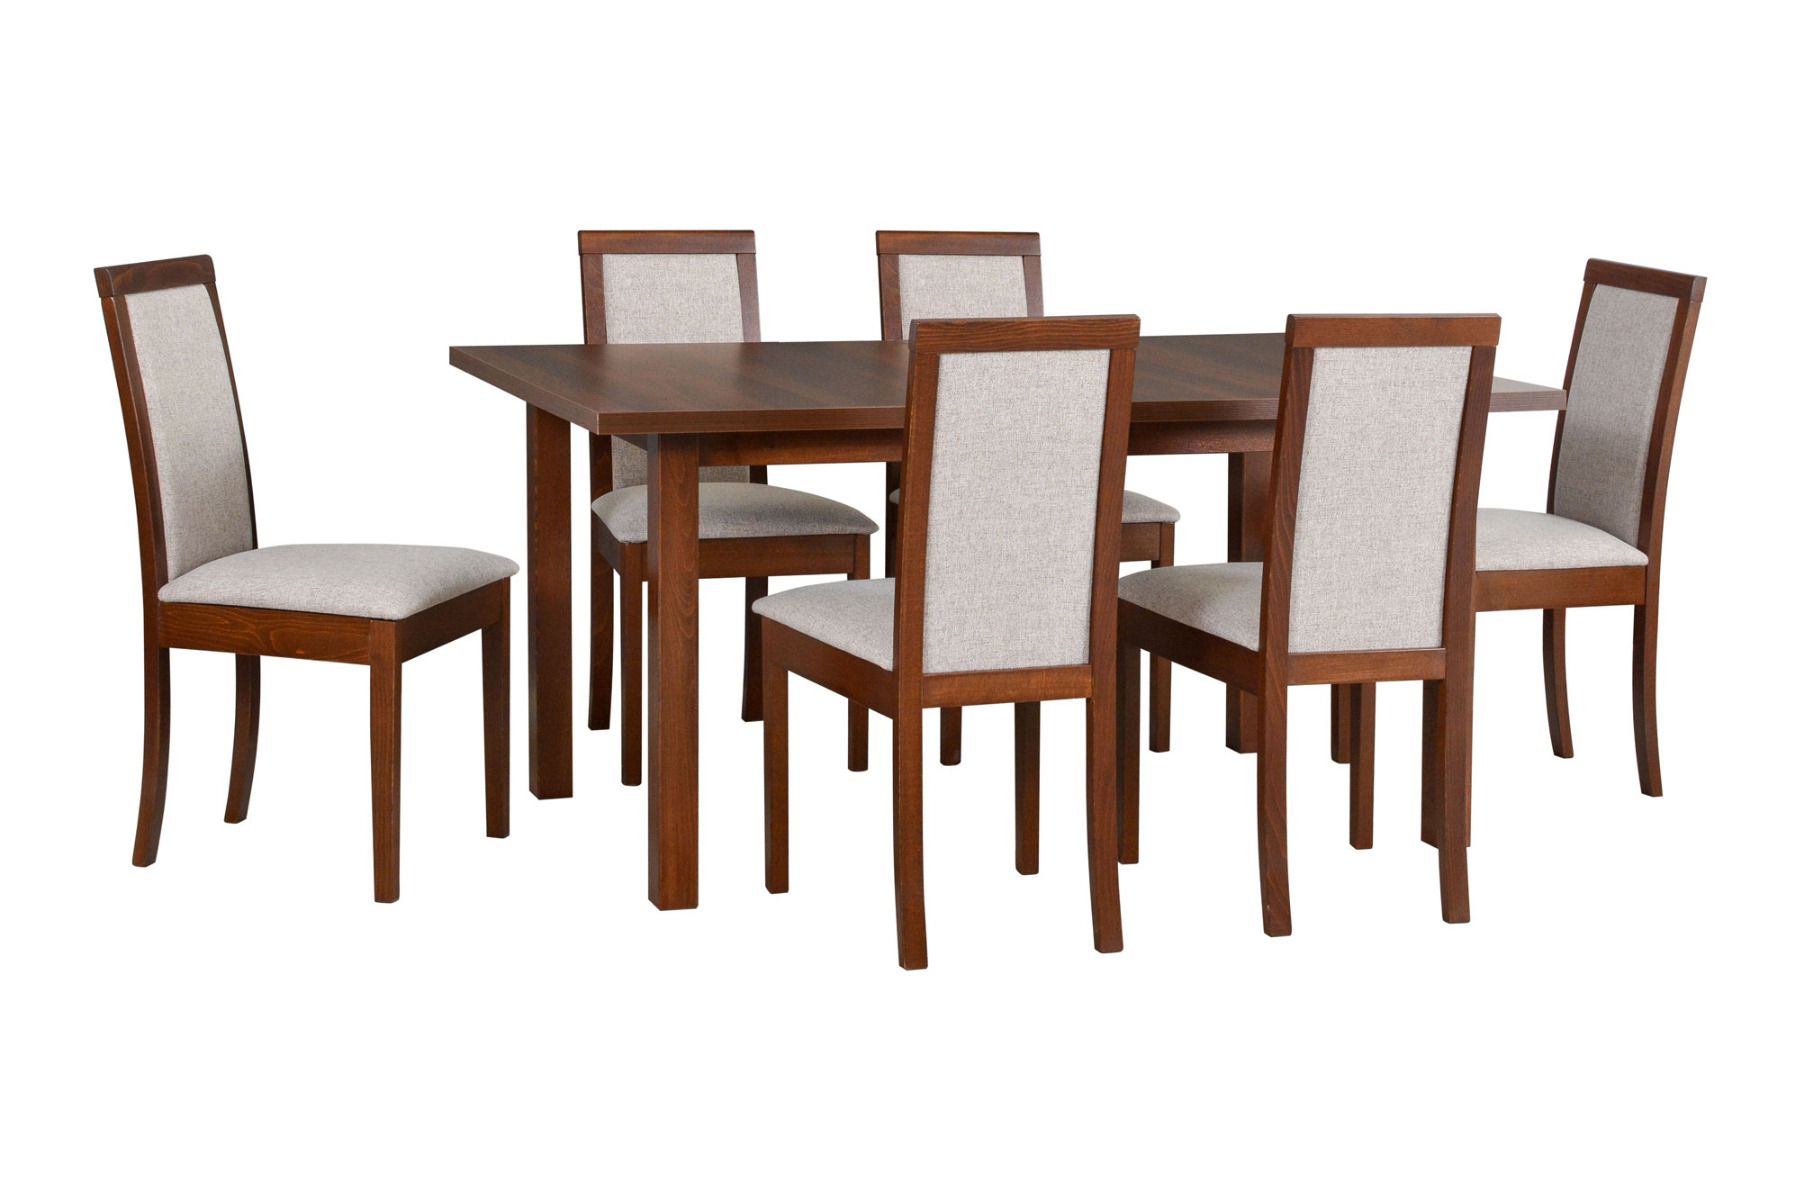 Esszimmer Komplett - Set W,  7 - teilig, zeitloses Design, ausziehbarer Esstisch in Nuss, 6 Holzstühle mit bequemer Polsterung, hohe Festigkeit